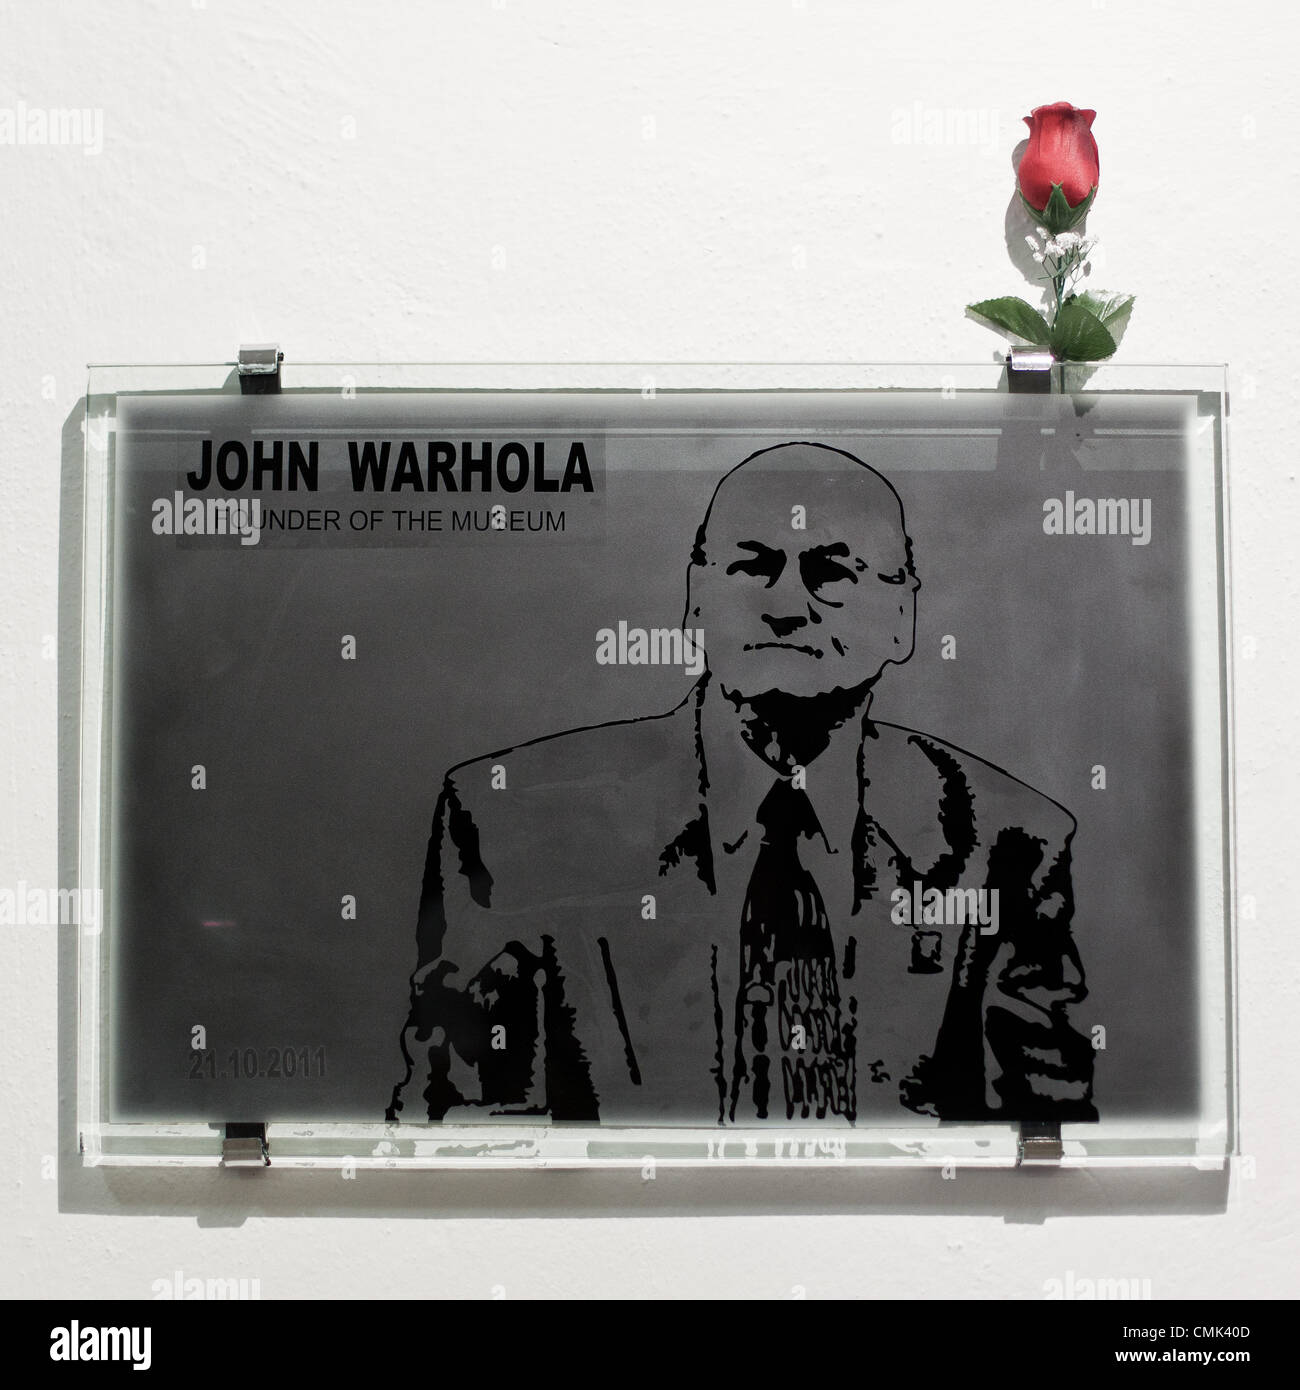 19 août 2012, l'Europe, la Slovaquie Medzilaborce - Mémorial de John Warhola fondateur de l'Andy Warhol Museum d'Art moderne, ouvert en 1991, qui contient de nombreuses œuvres et effets d'Andy Warhol et de son frère Paul et neveu James Warhola. La mère de Warhol, Julia Warhola, est né et a vécu avec son mari dans le village de Miková, 17 km à l'ouest. Andy Warhol (6 août 1928 - 22 février 1987) était un artiste américain qui a été une figure de proue dans le mouvement d'art visuel connu sous le nom de John Warhola pop art (31 mai 1925 - 24 décembre 2010) était son jeune frère. Banque D'Images